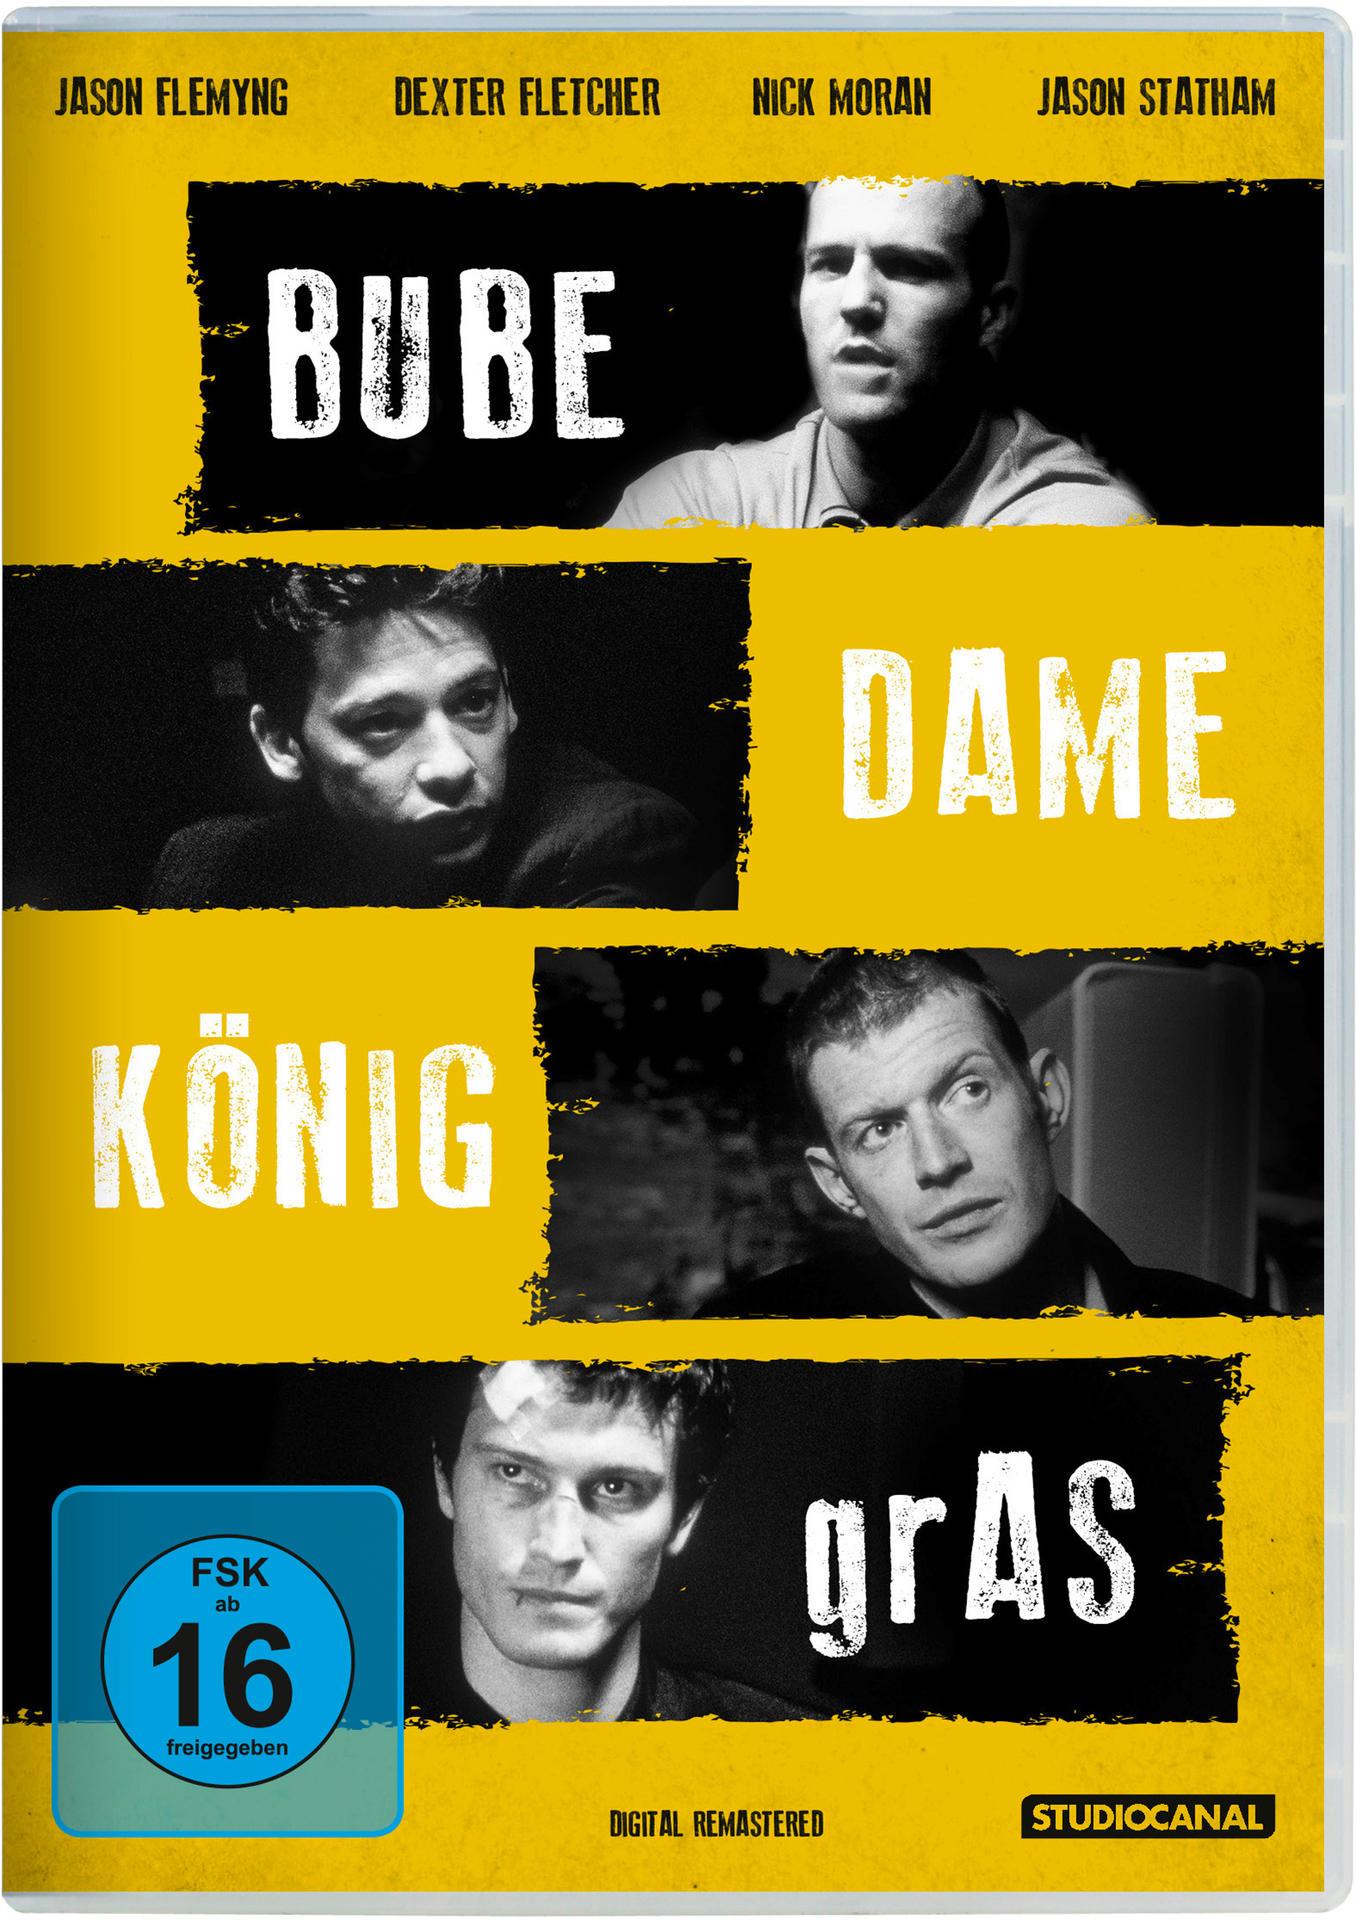 (DIGITAL GRAS REMASTERED) BUBE KÖNIG DAME DVD